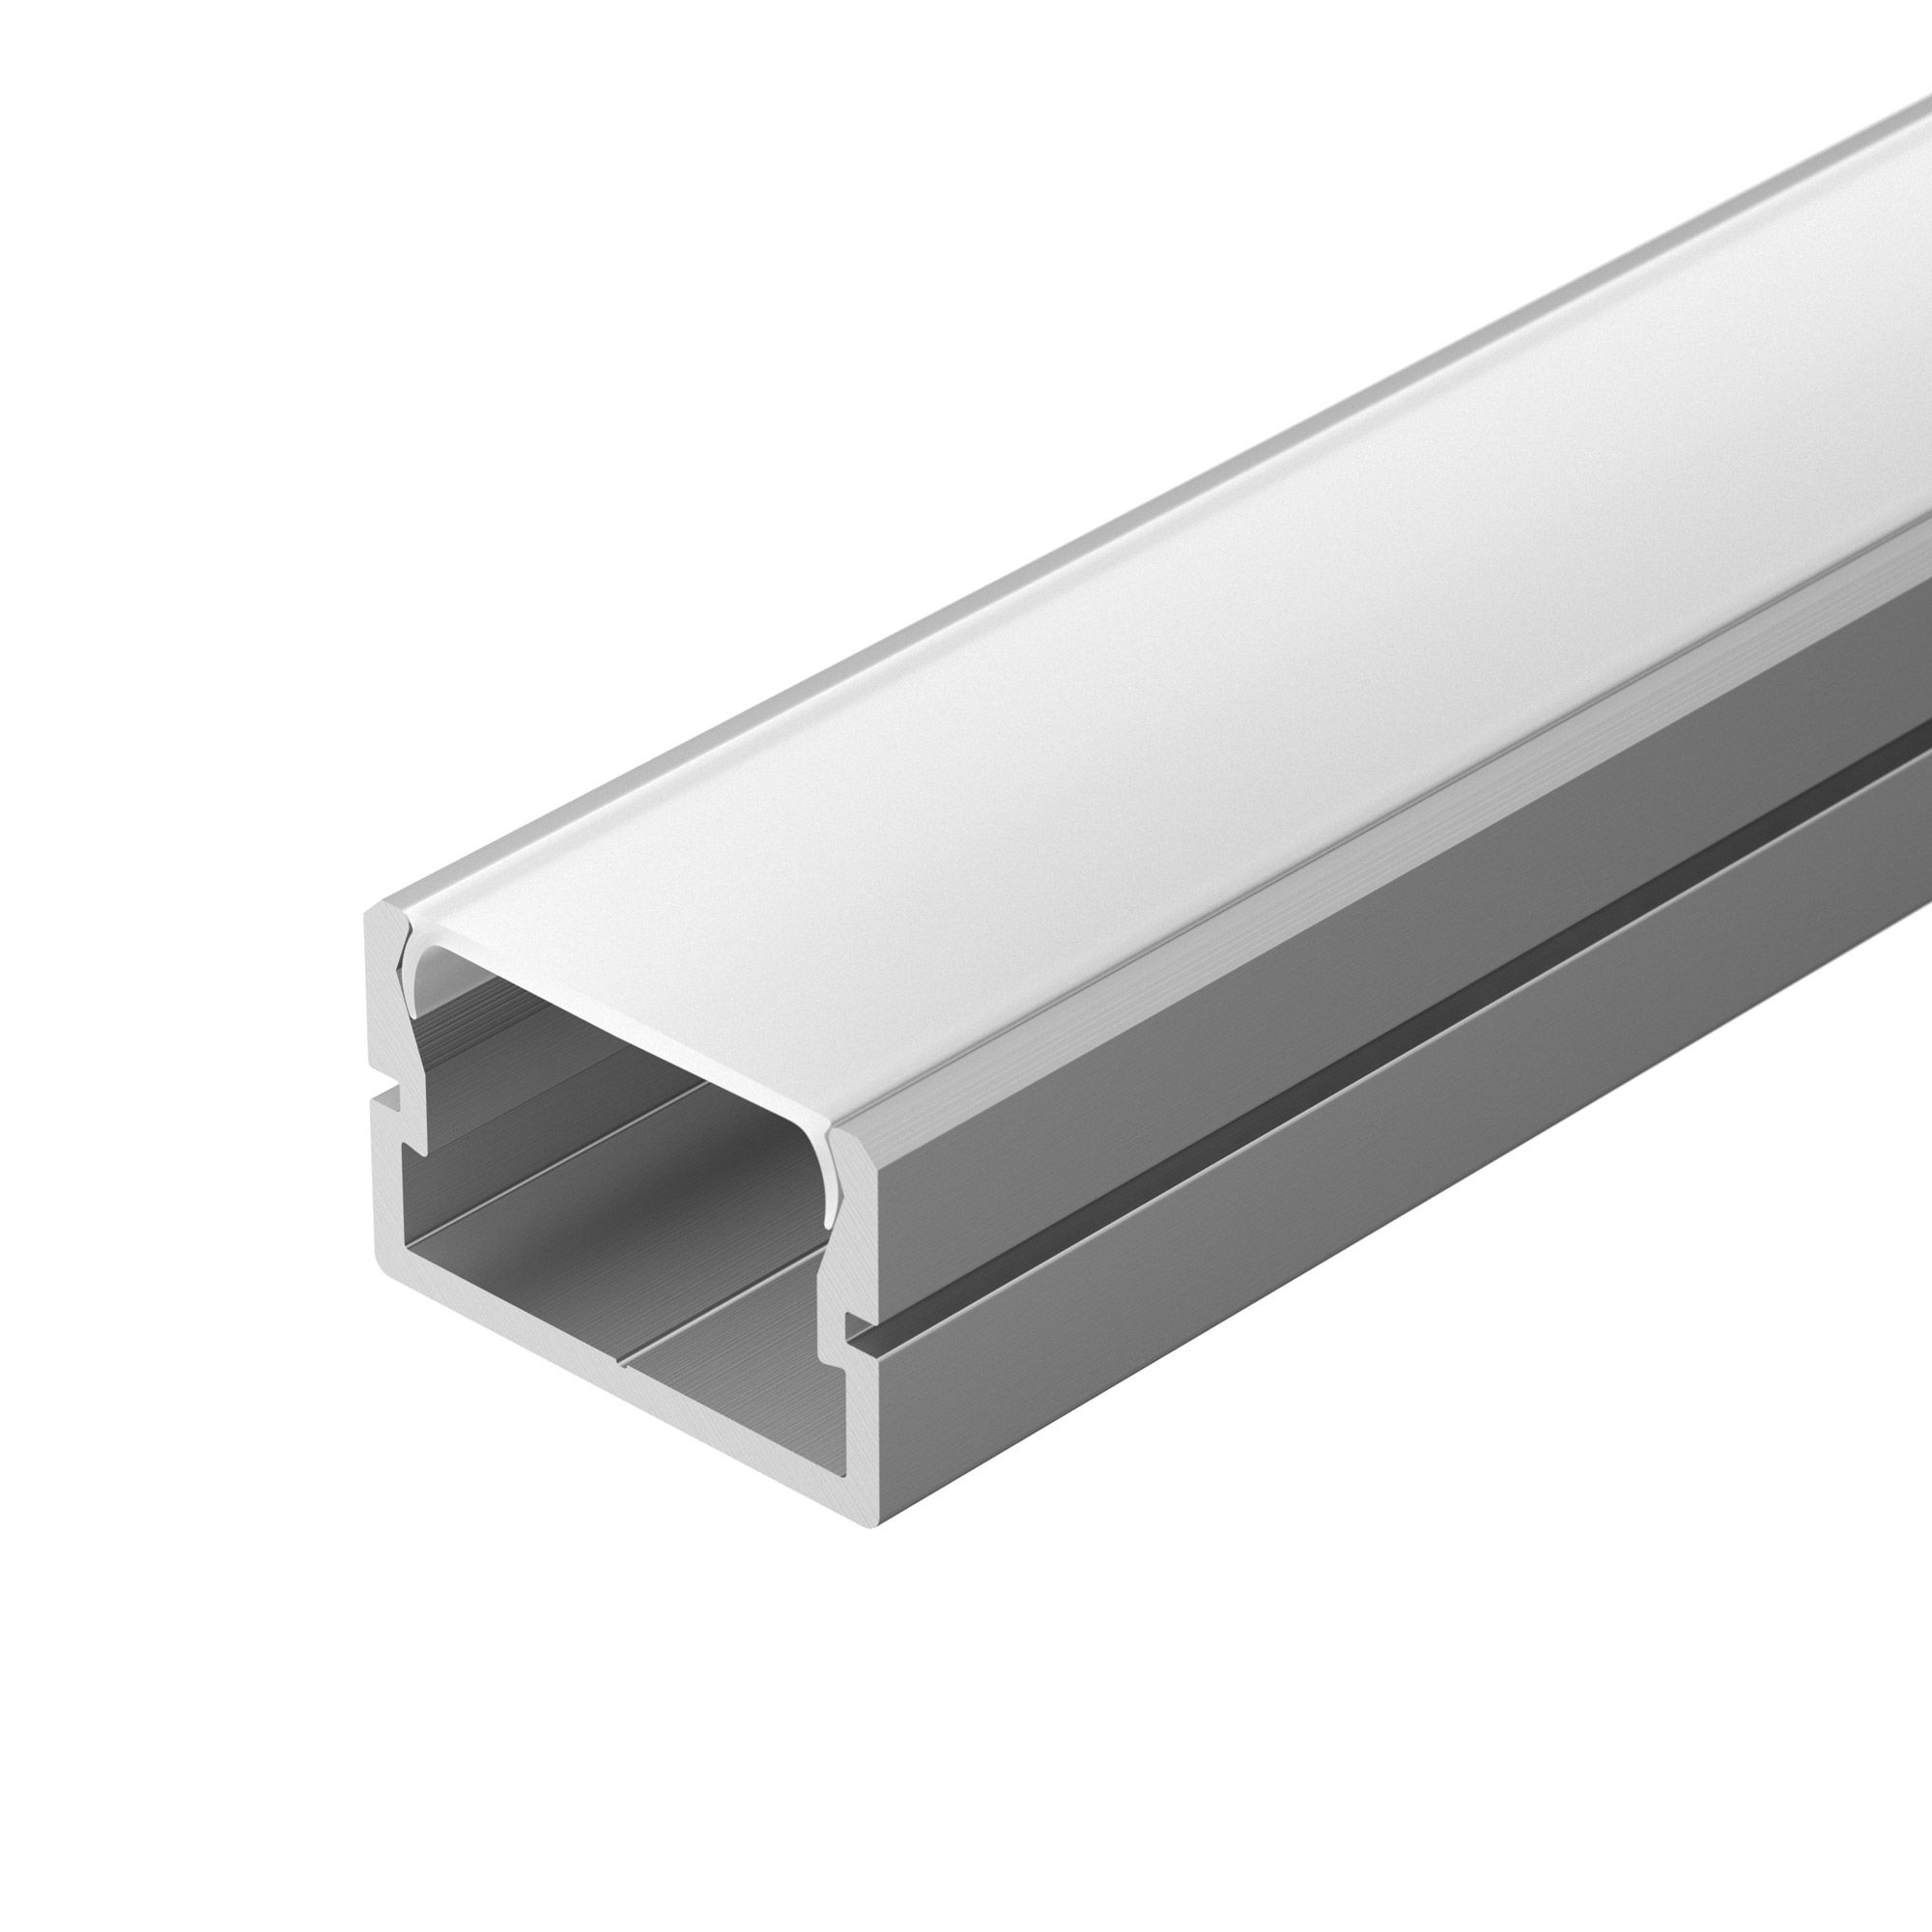 Профиль SILER-3000 ANOD (Arlight, Алюминий) профиль для светодиодной ленты накладной алюминиевый lc lp 9035 2 anod